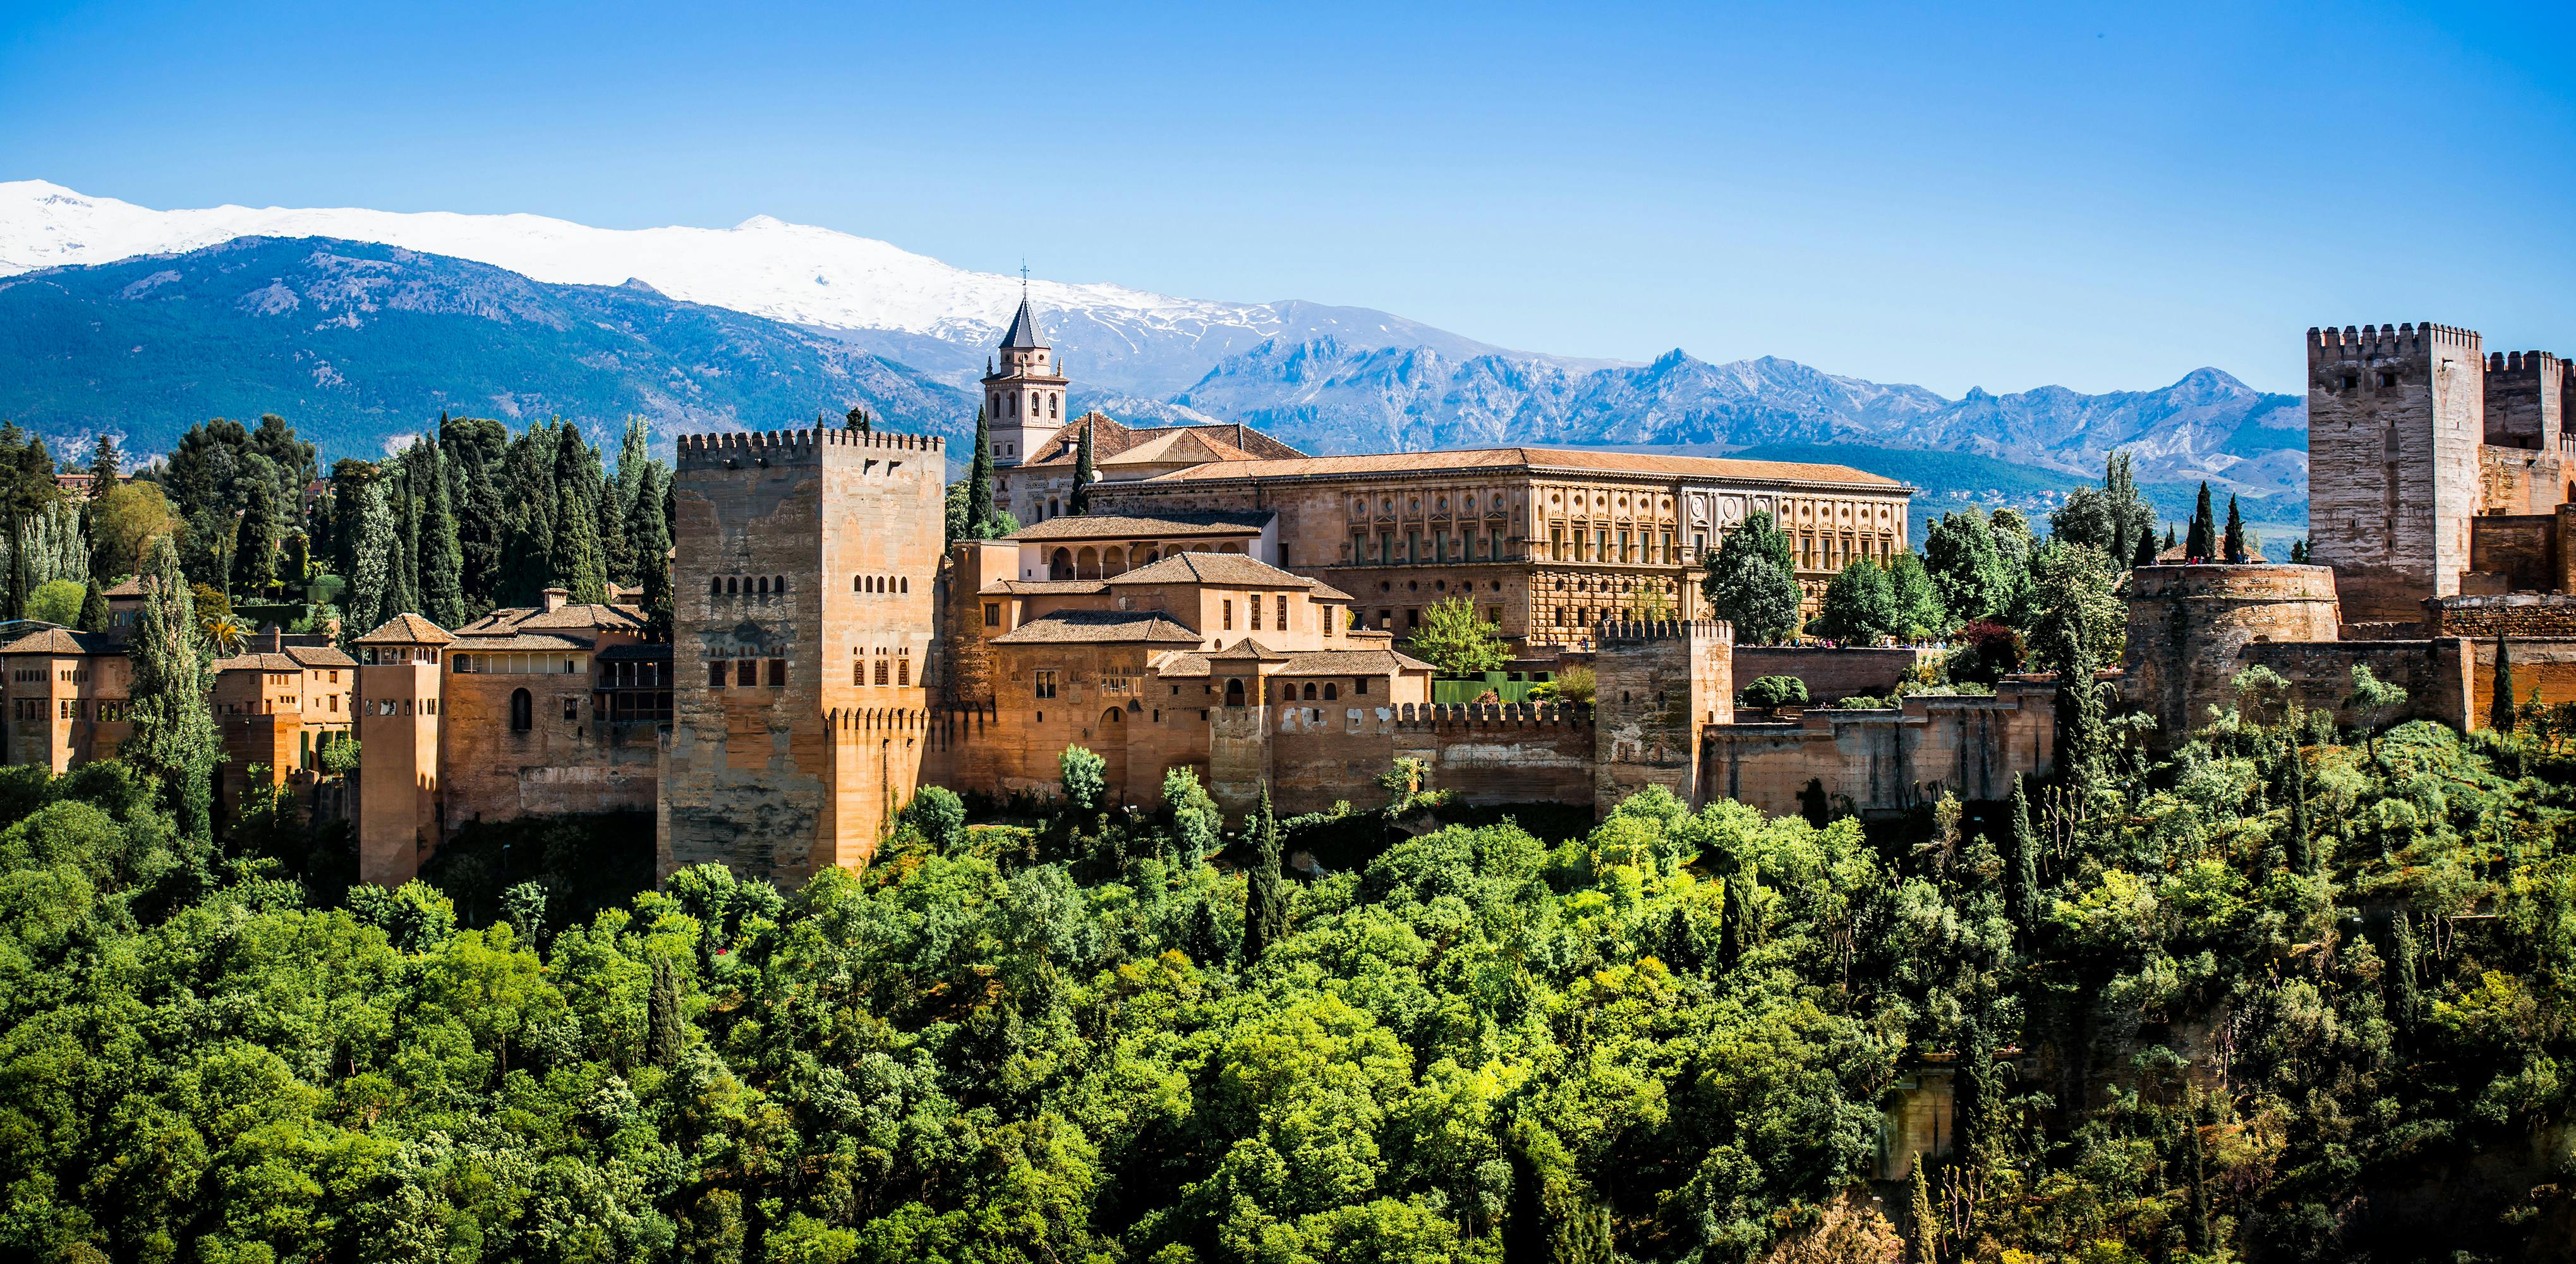 Visita a la Alhambra con espectáculo flamenco